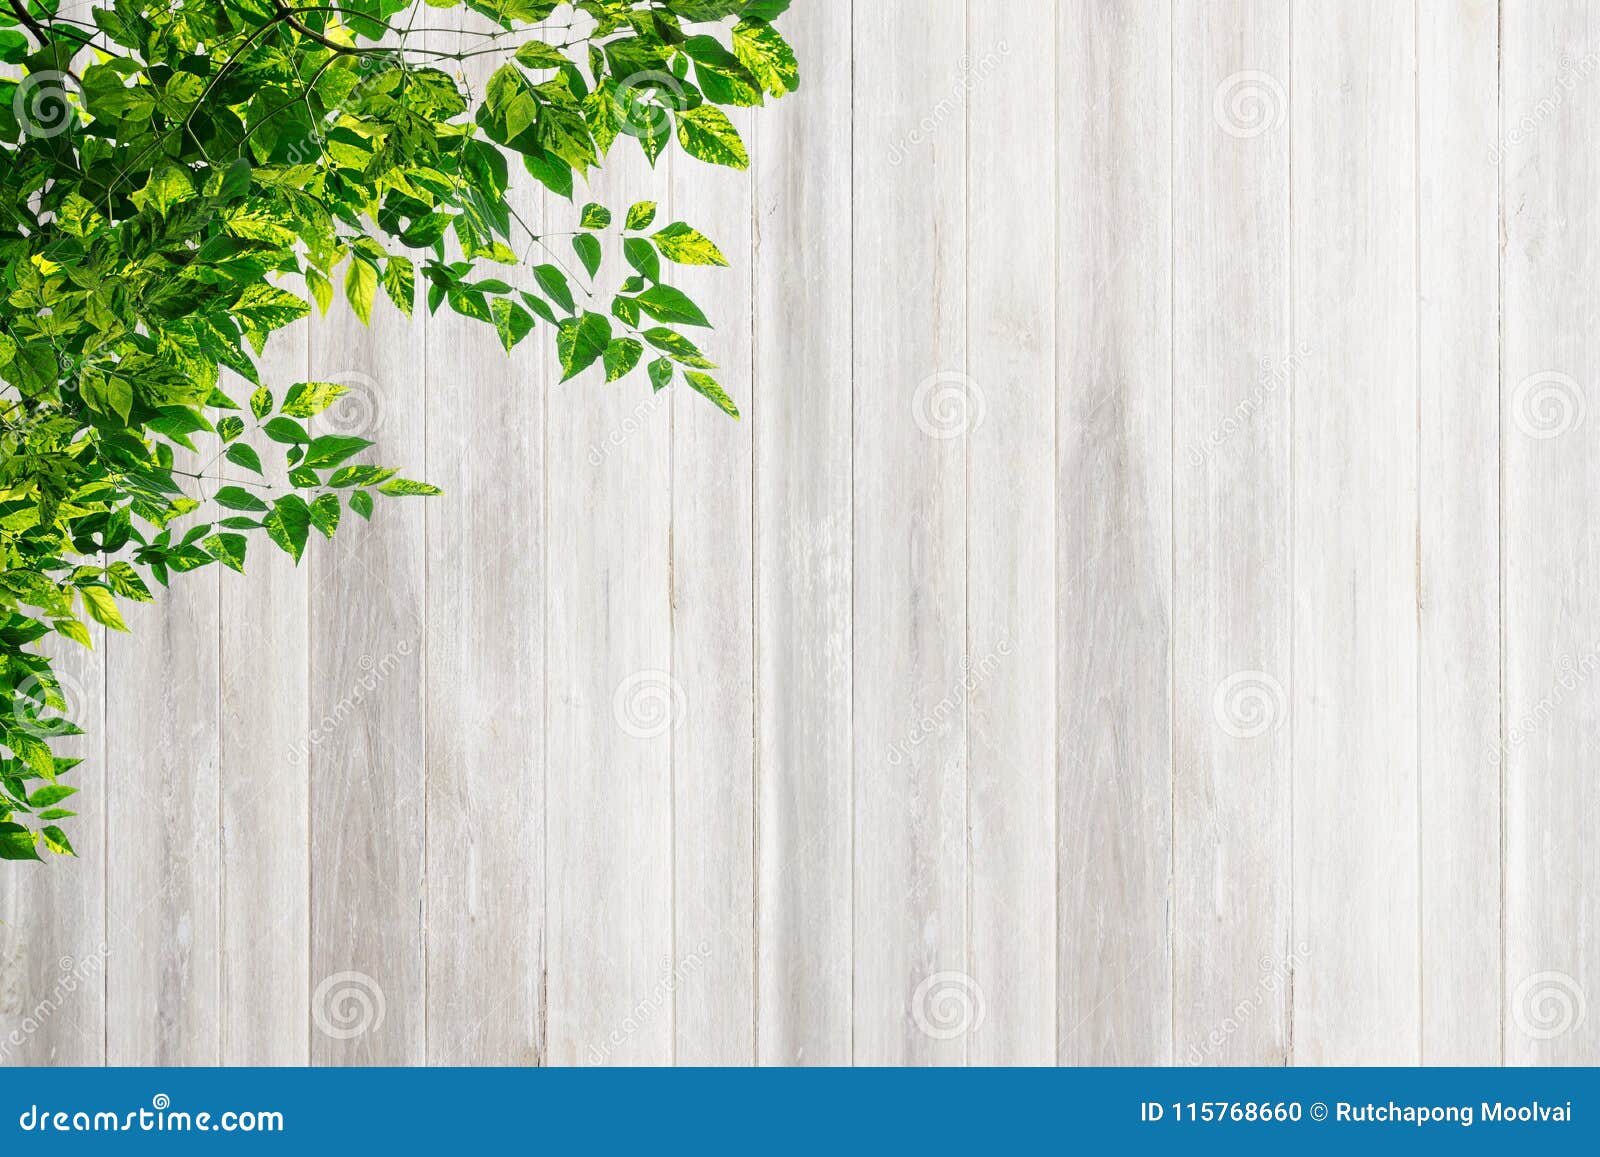 Bức tường gỗ tự nhiên trắng với lá là một mẫu thiết kế đang được ưa chuộng trong thi công nội thất hiện nay. Hình ảnh này không chỉ tạo nên vẻ đơn giản, thanh lịch mà còn mang đến cảm giác tự nhiên, gần gũi với thiên nhiên. Hãy bấm vào đây để xem toàn bộ hình ảnh và tận hưởng sự thanh khiết của tường gỗ trắng.